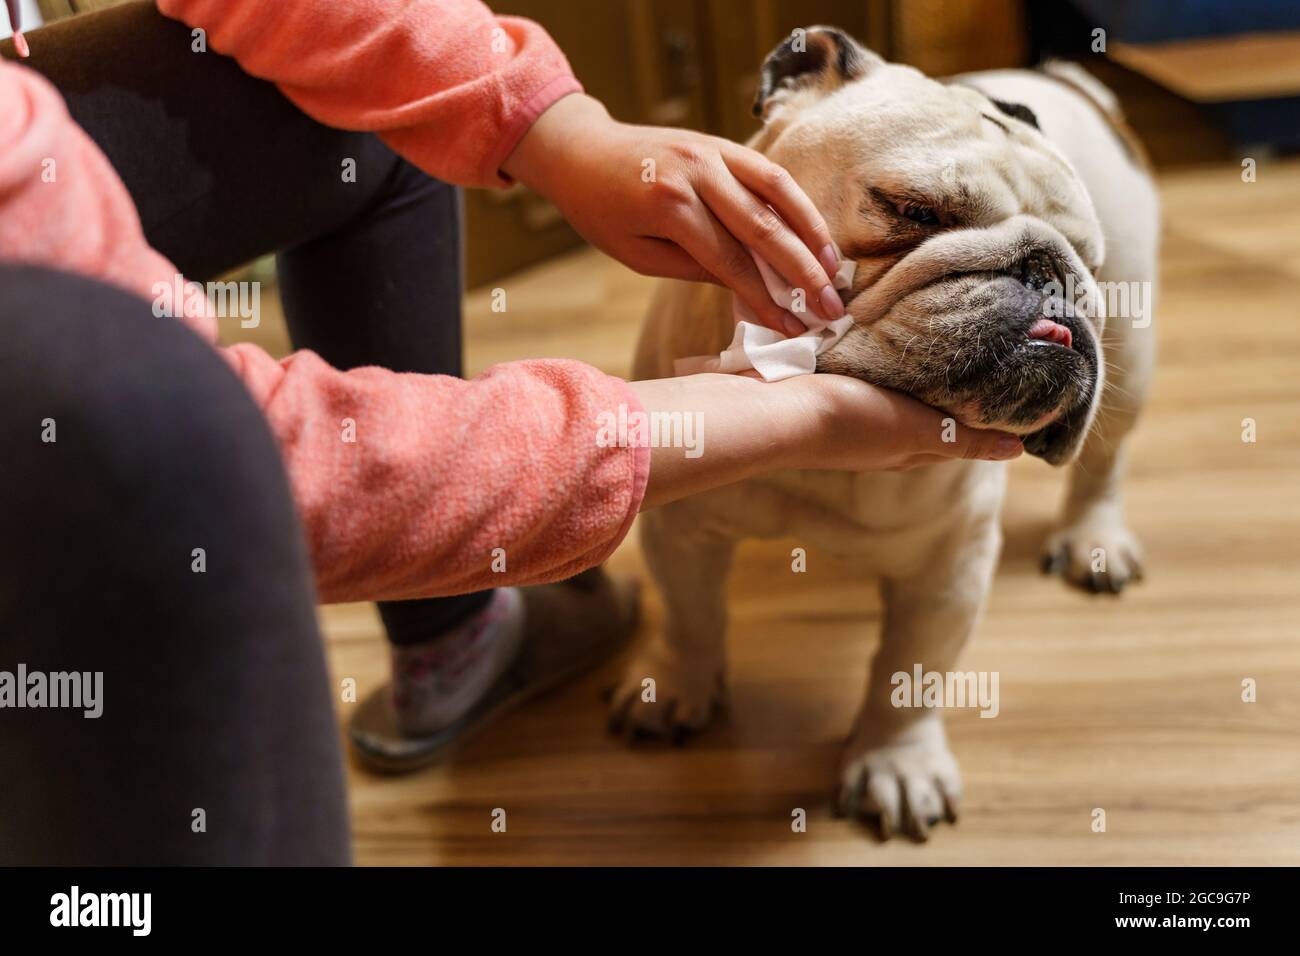 Unbekannte kaukasische Frau kümmert sich um ihren Hund - Hände Von weiblichen Mädchen mit nassen Tuch, um den Kopf zu reinigen Ihr Haustier Erwachsene ältere englische Bulldogge Stockfoto